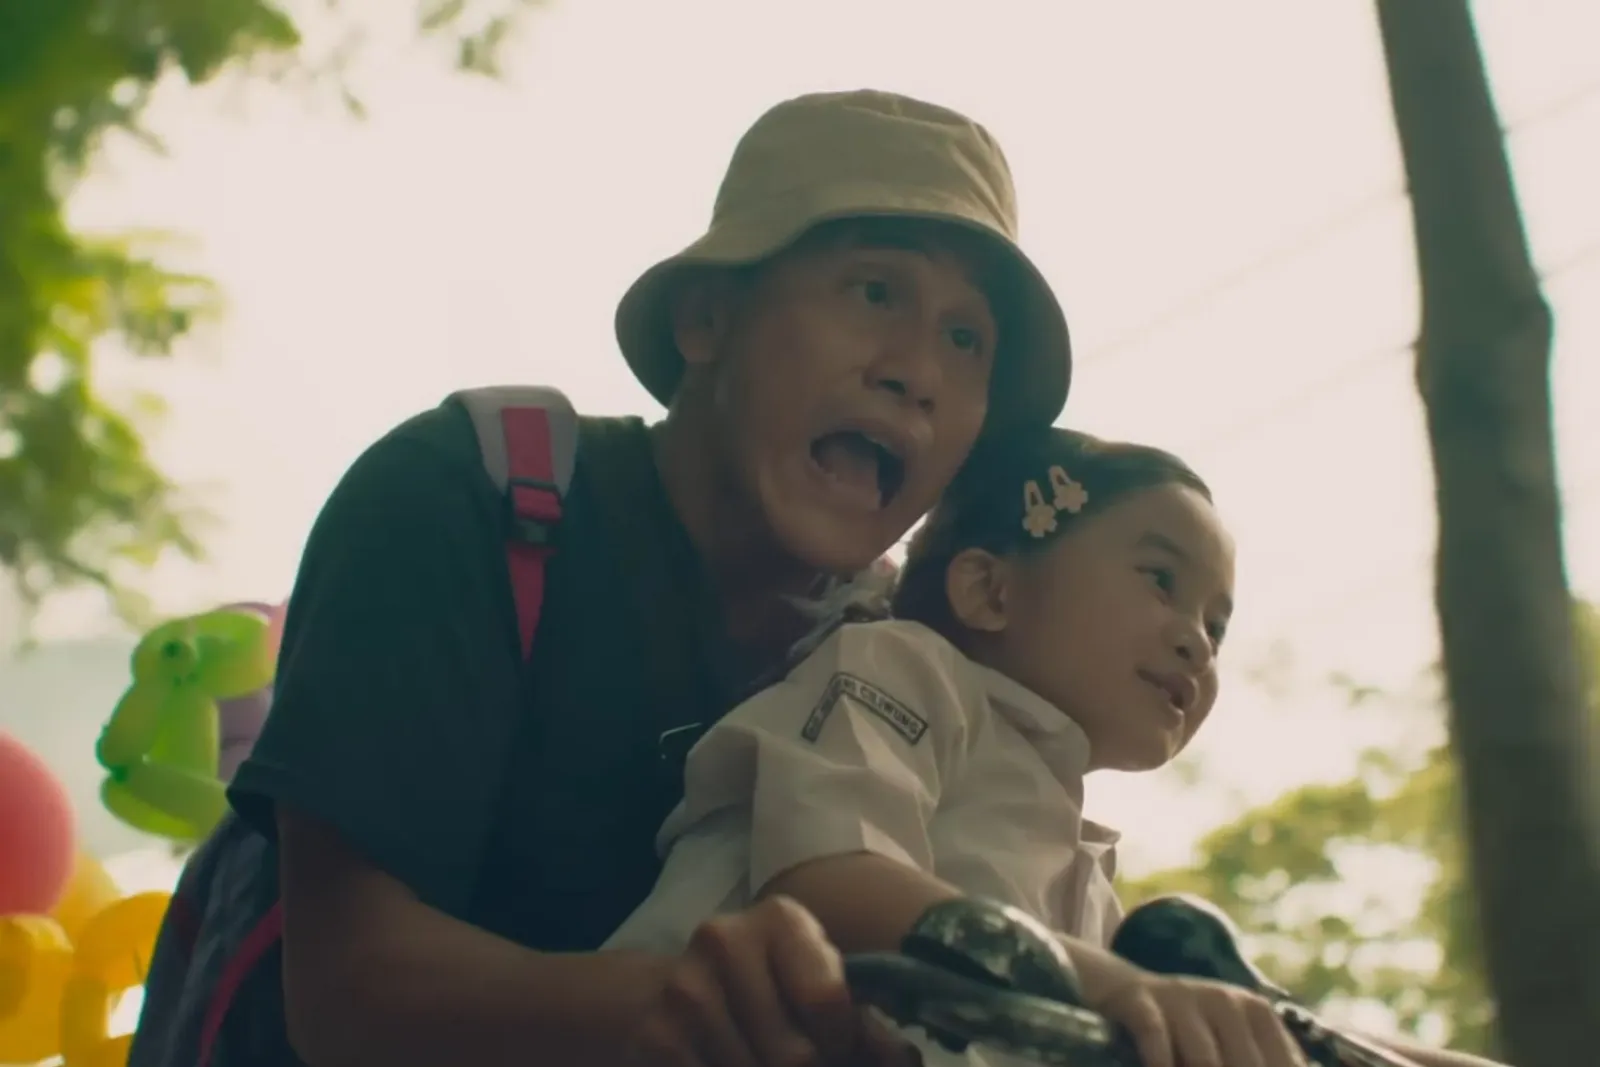 7 Rekomendasi Film Indonesia Ayah dan Anak, Hangat nan Haru!